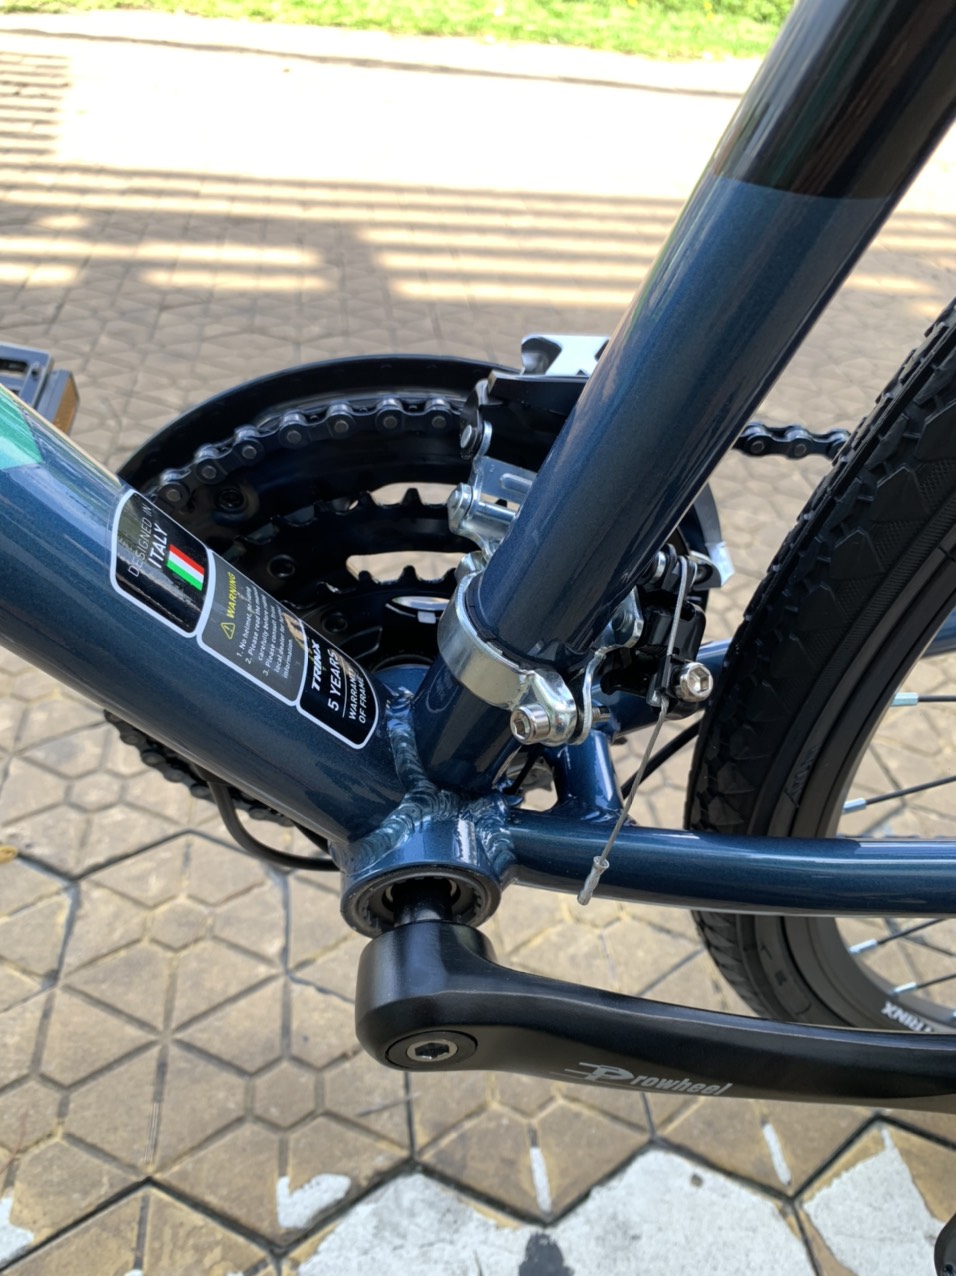 Xe đạp thể thao TRINX FREE 2.0 2020 Blue Black